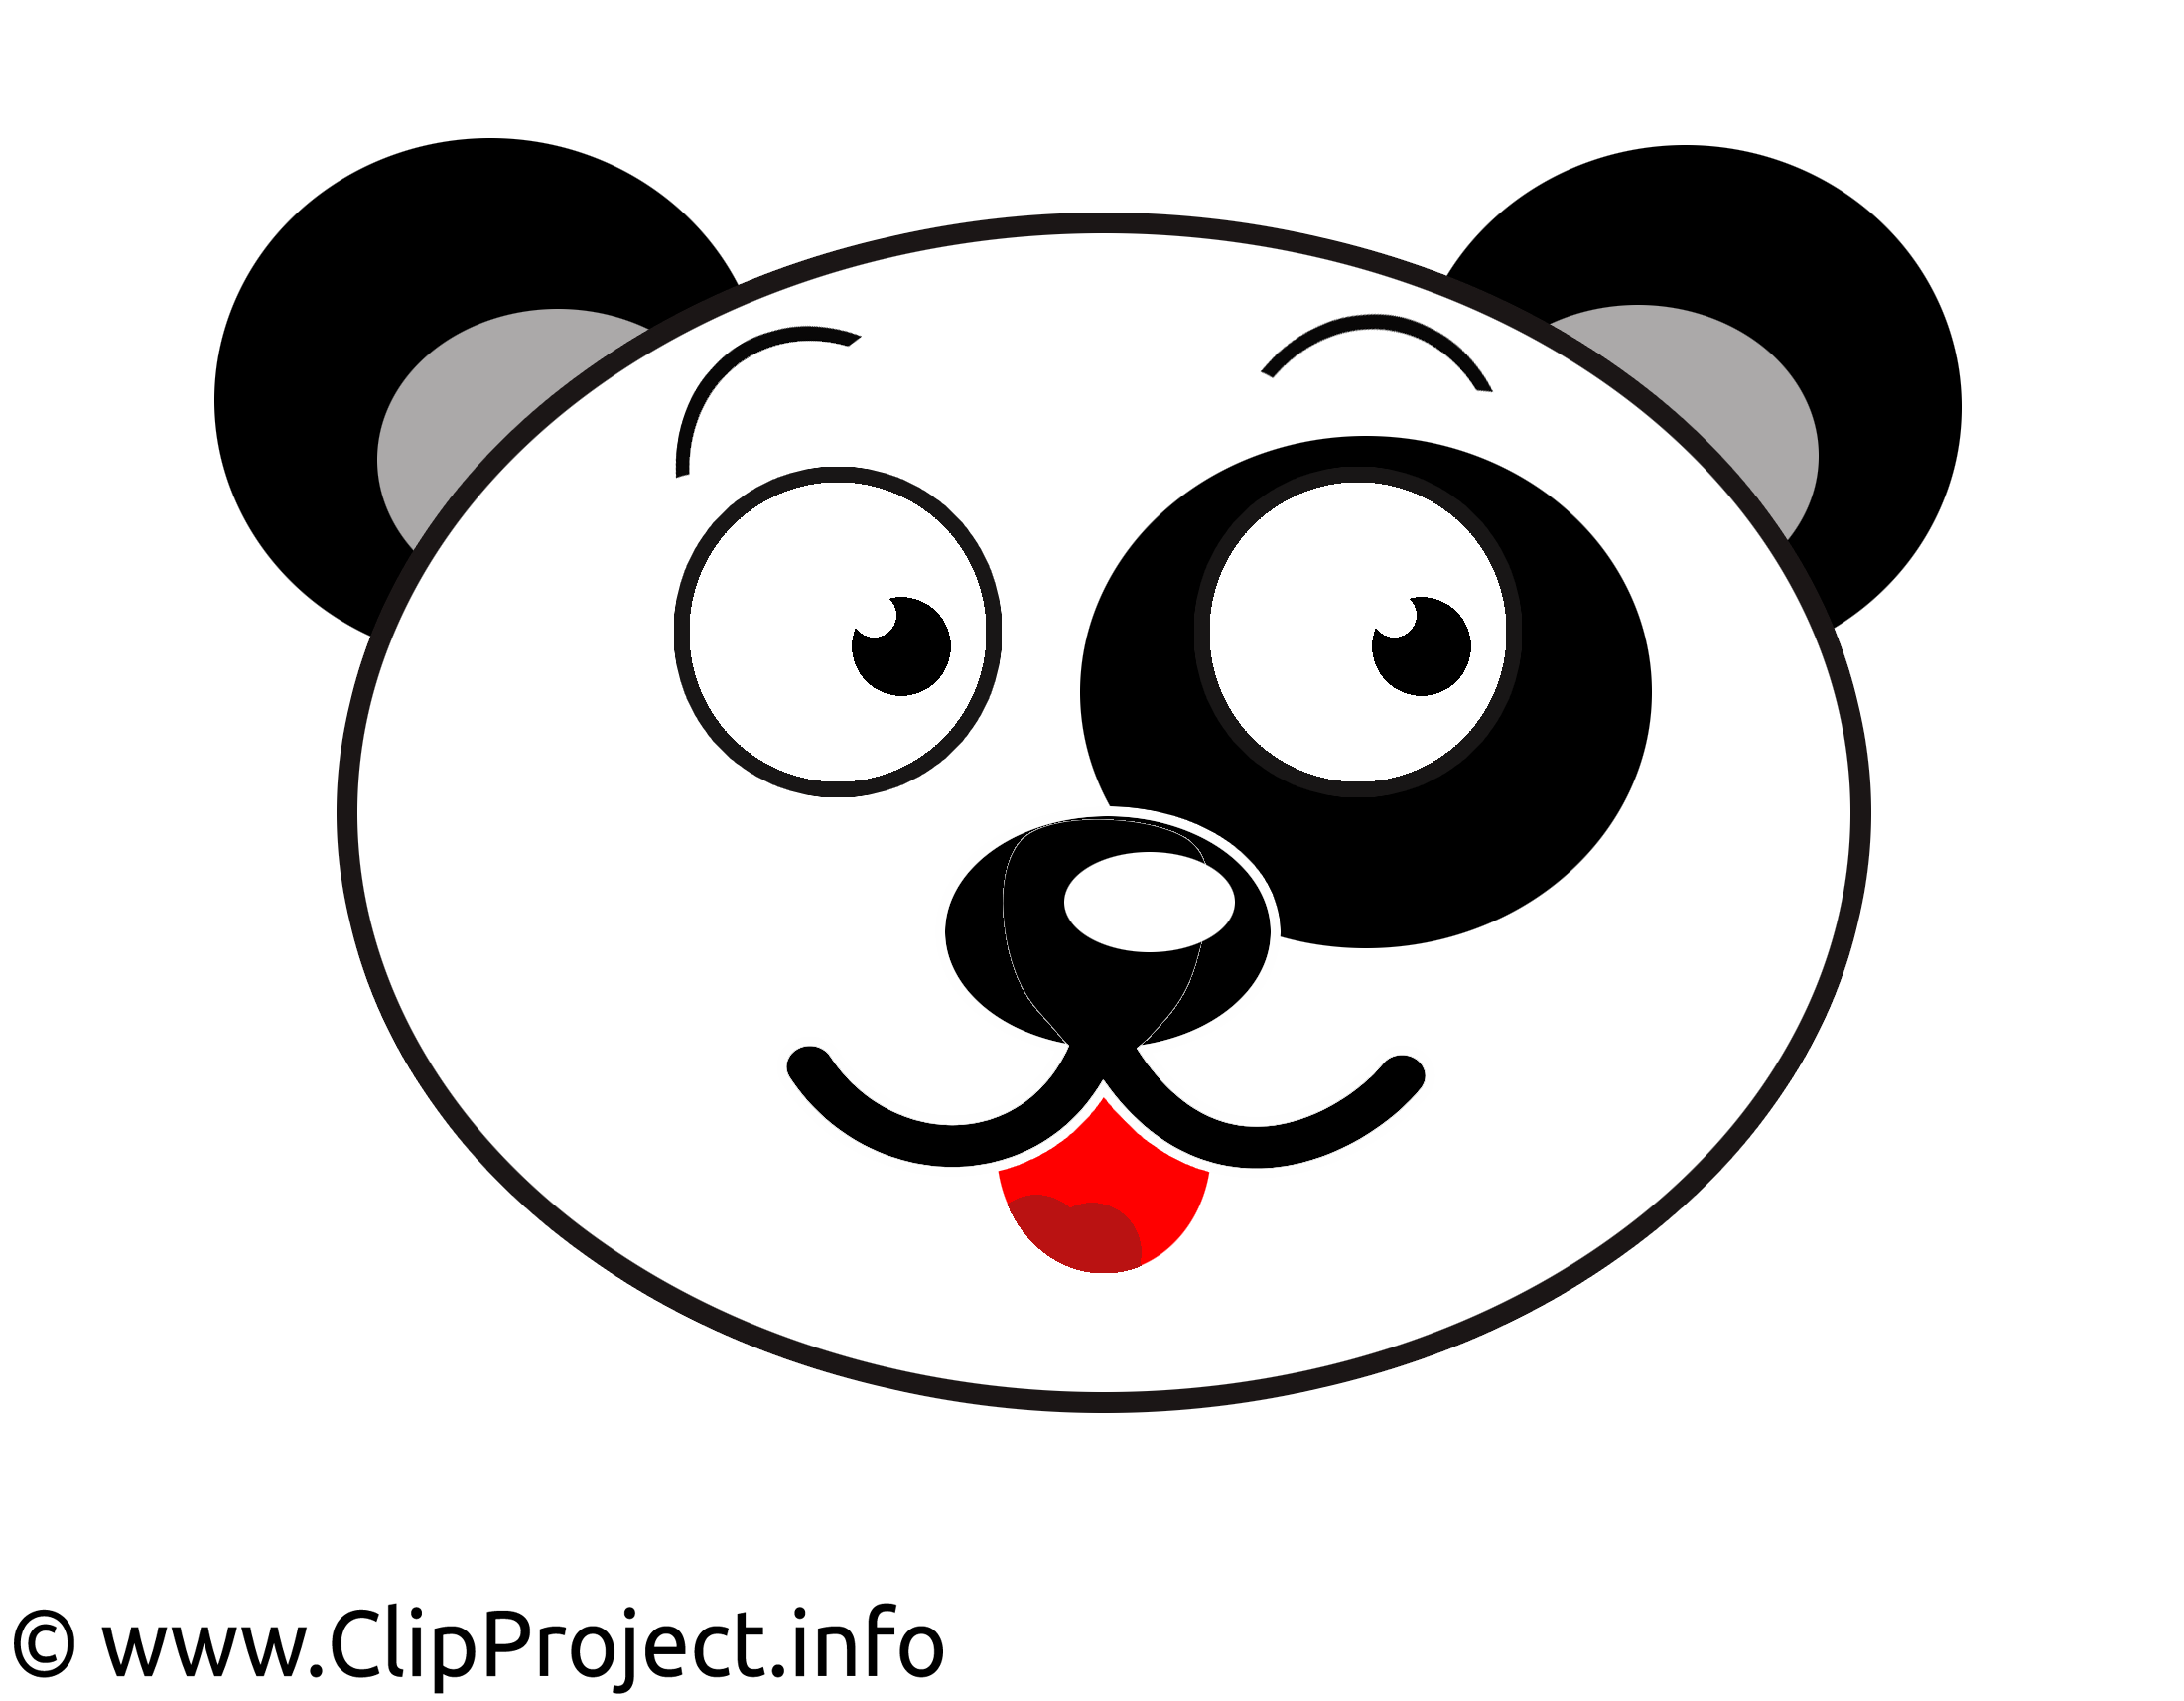 clipart panda gratuit - photo #23